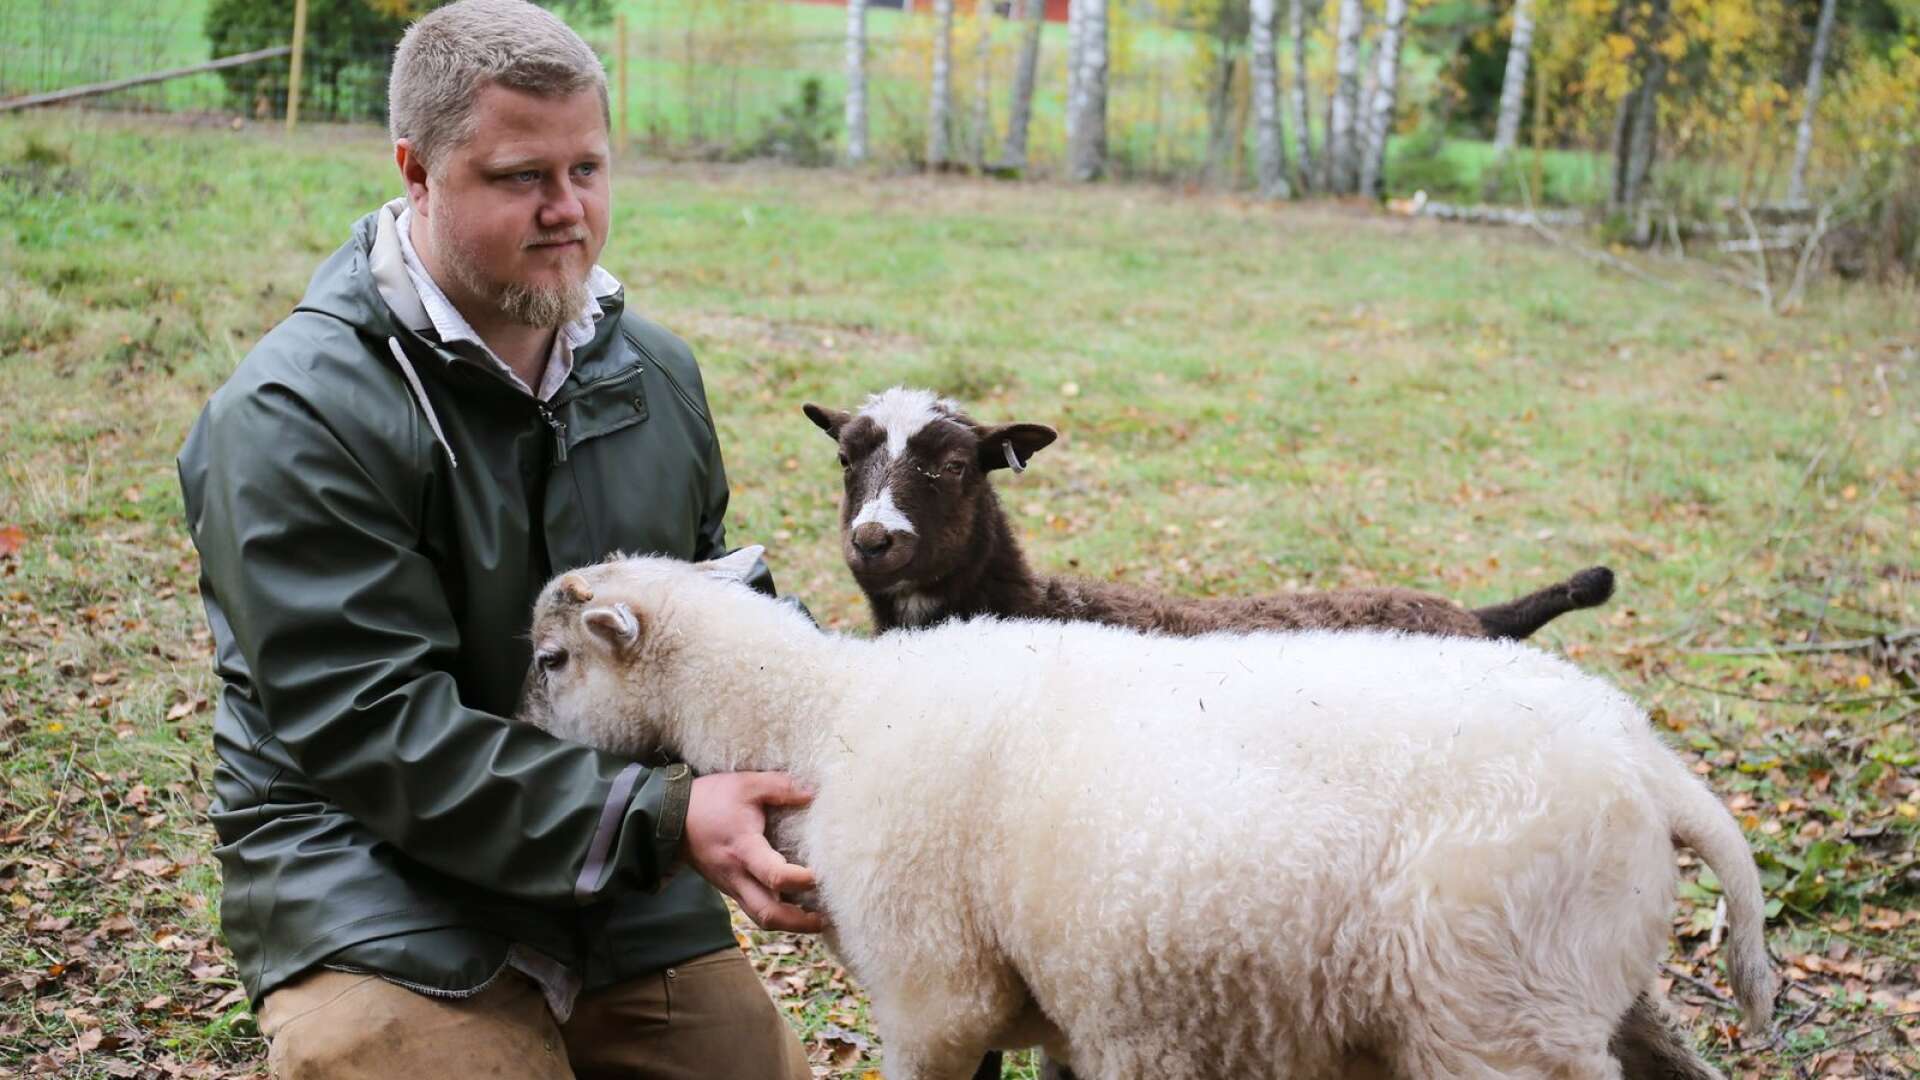 ”De är väldigt sociala. De gillar när man gosar med dem” säger Viktor Jansson om det senaste tillskottet på deras gård i Finnebäck, fyra Värmlandsfår.